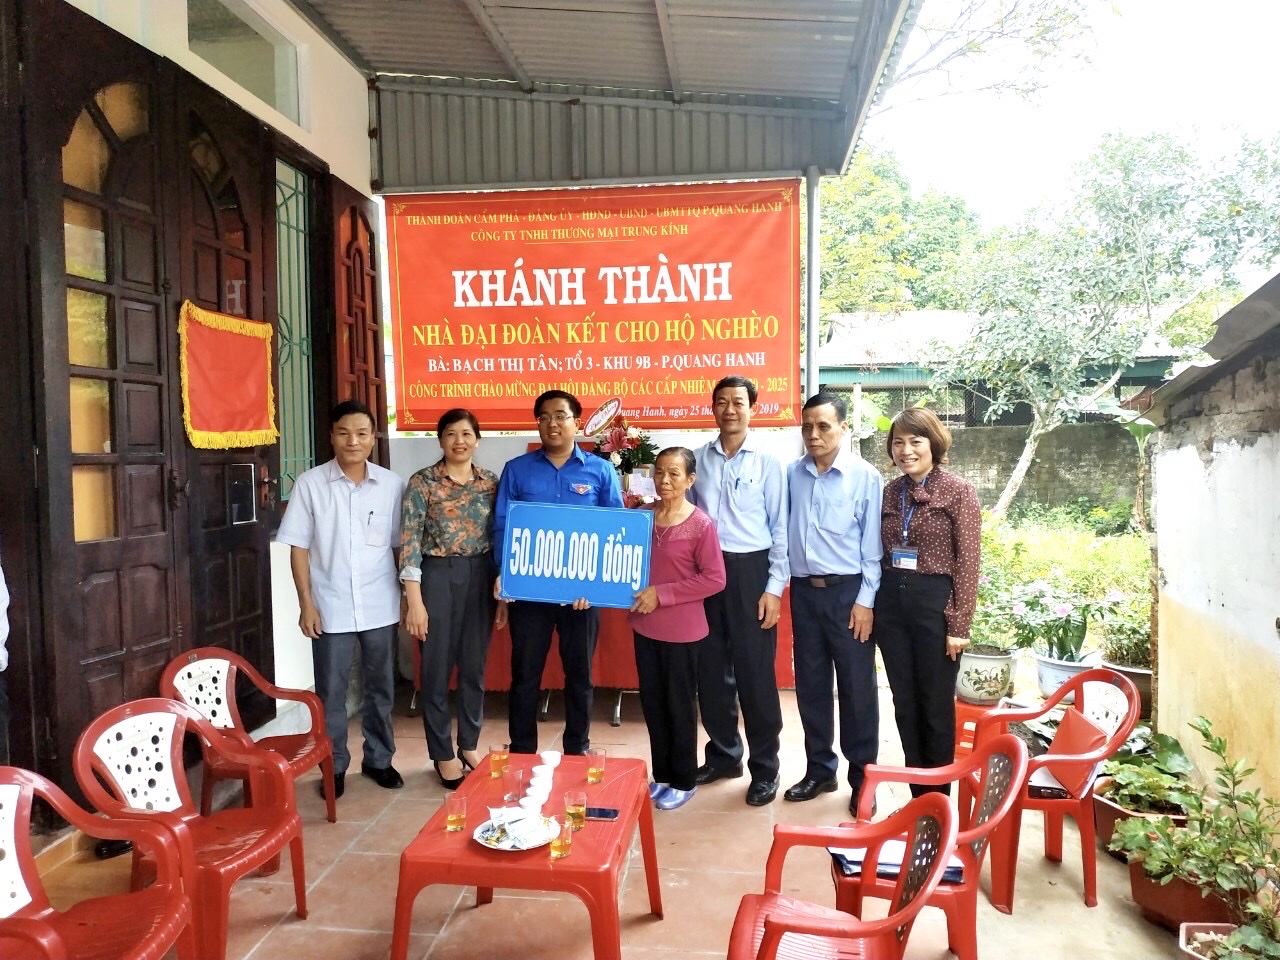 Thành Đoàn Cẩm Phả trao quà hỗ trợ nhân dịp khánh thành nhà đại đoàn kếtcho gia đình hộ nghèo ở phường Quang Hanh.